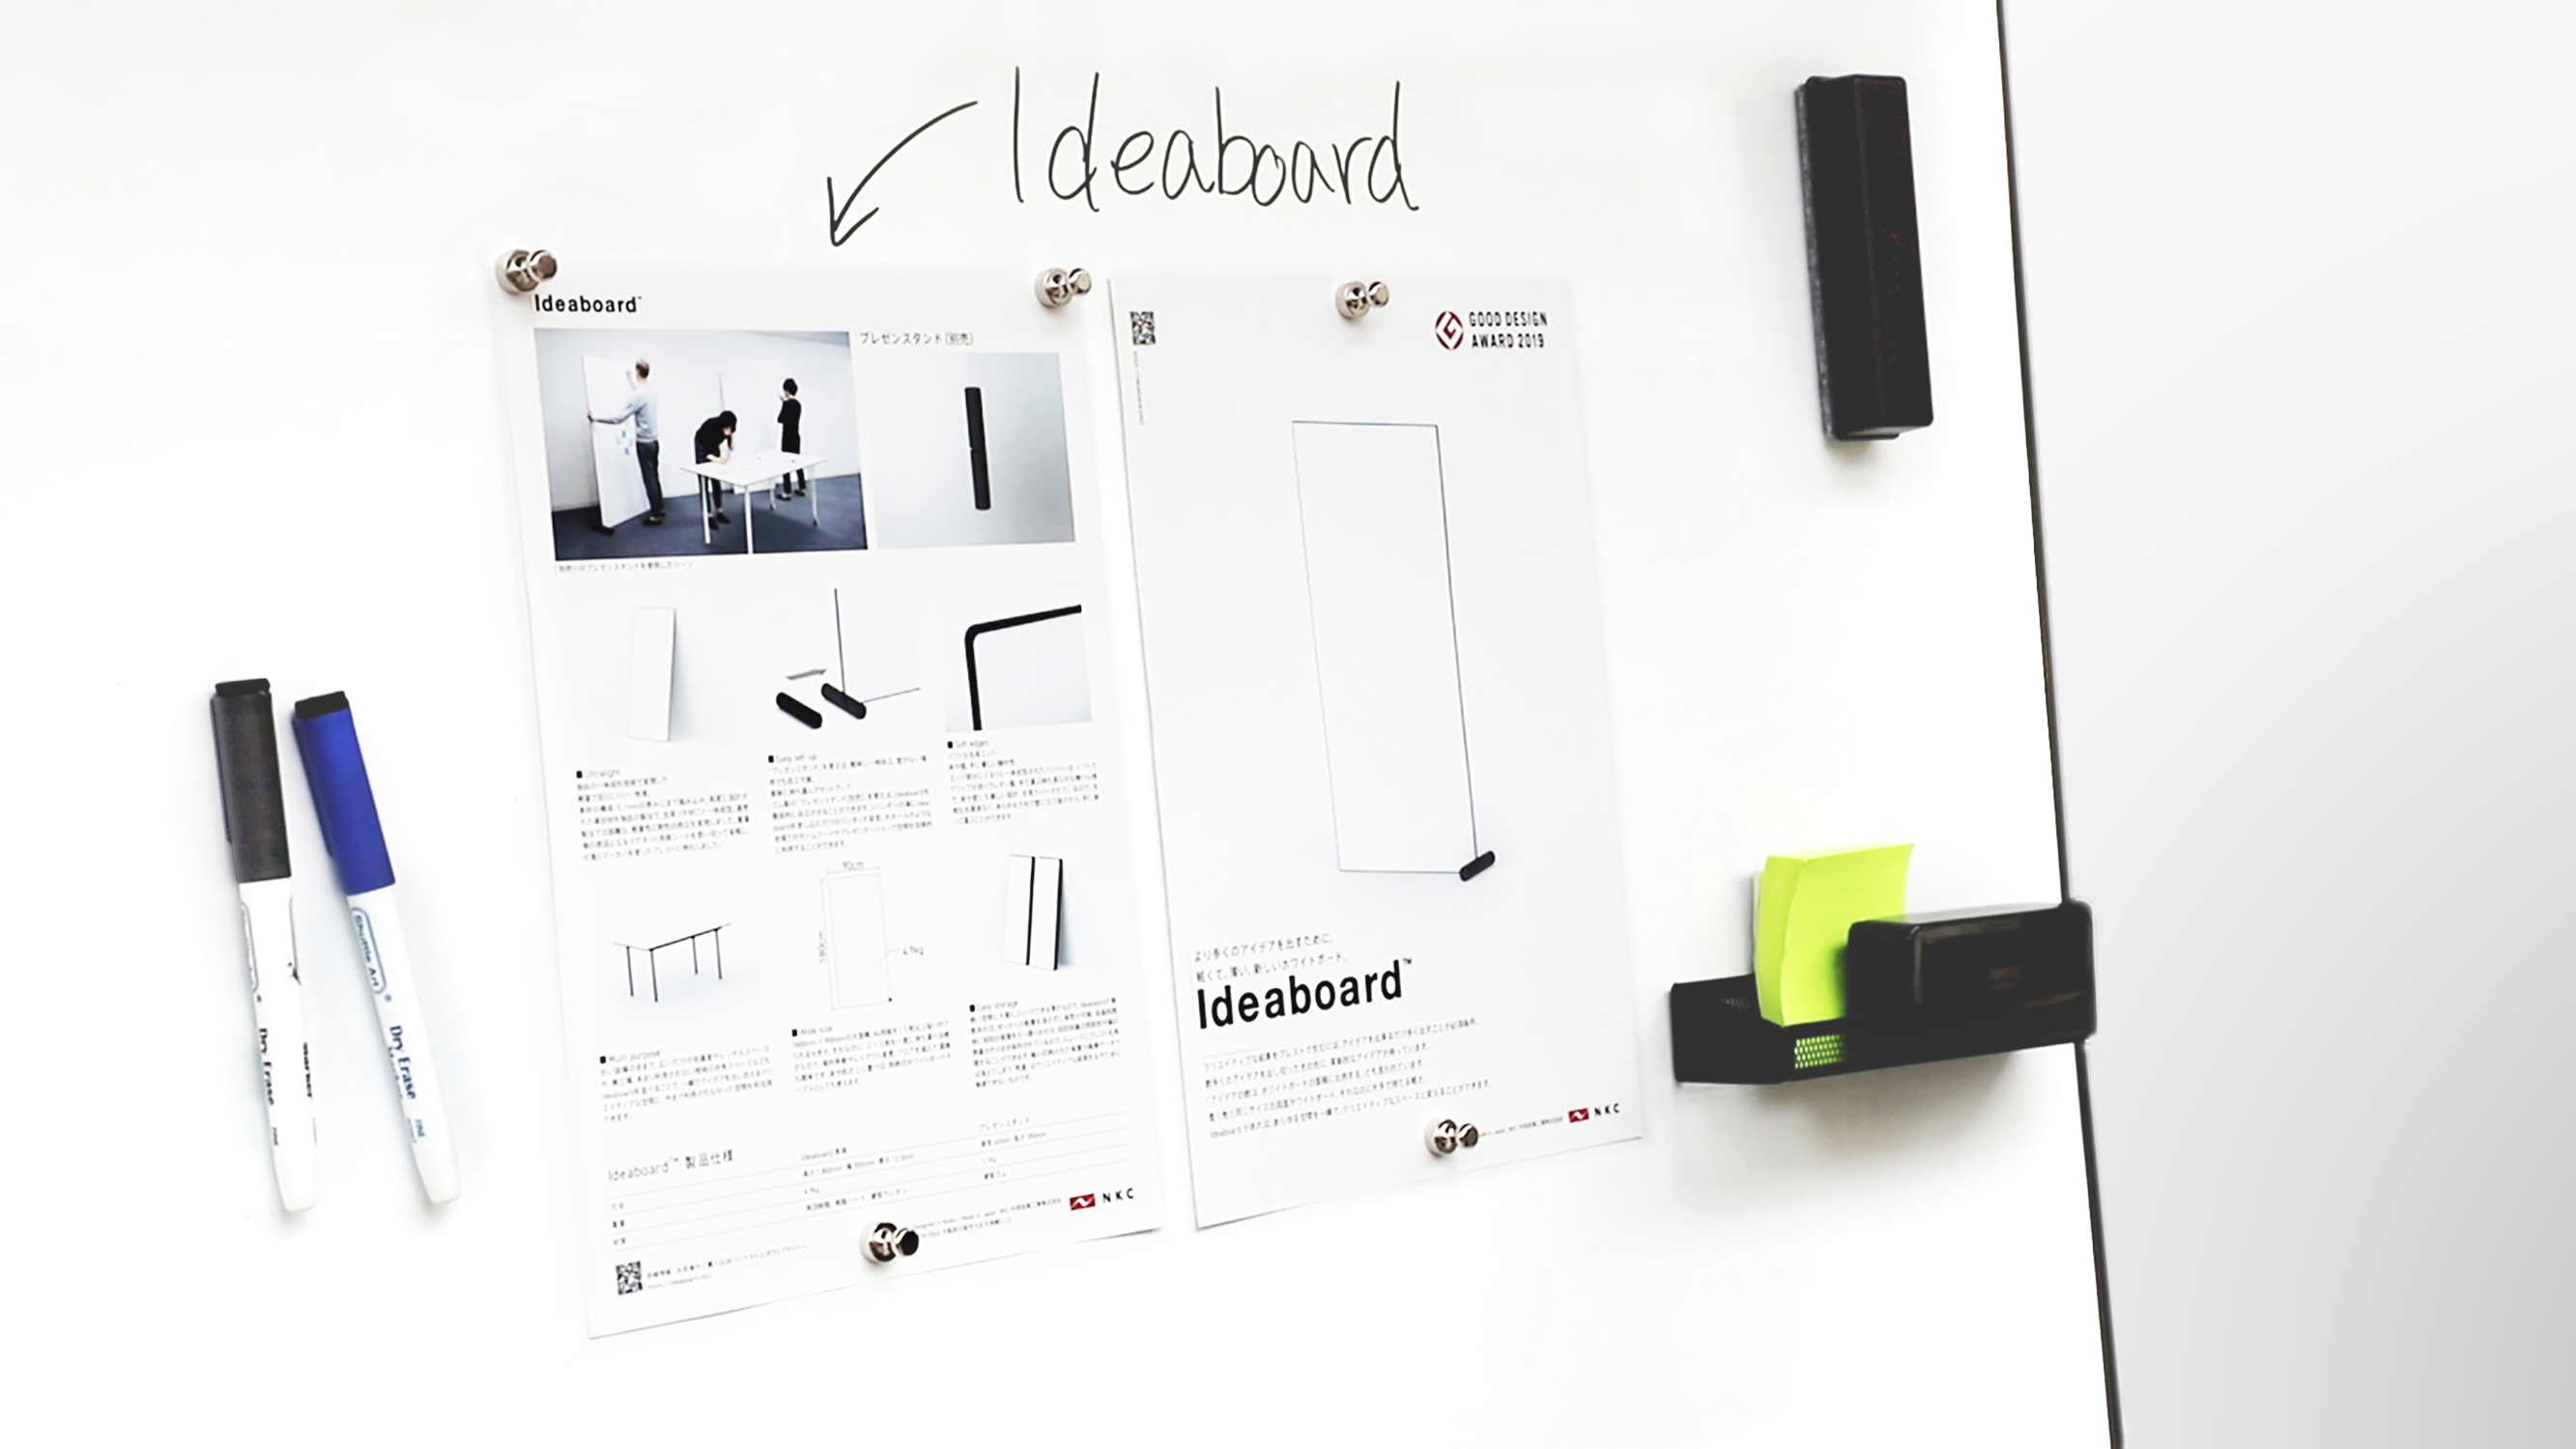 Ideaboard magnet